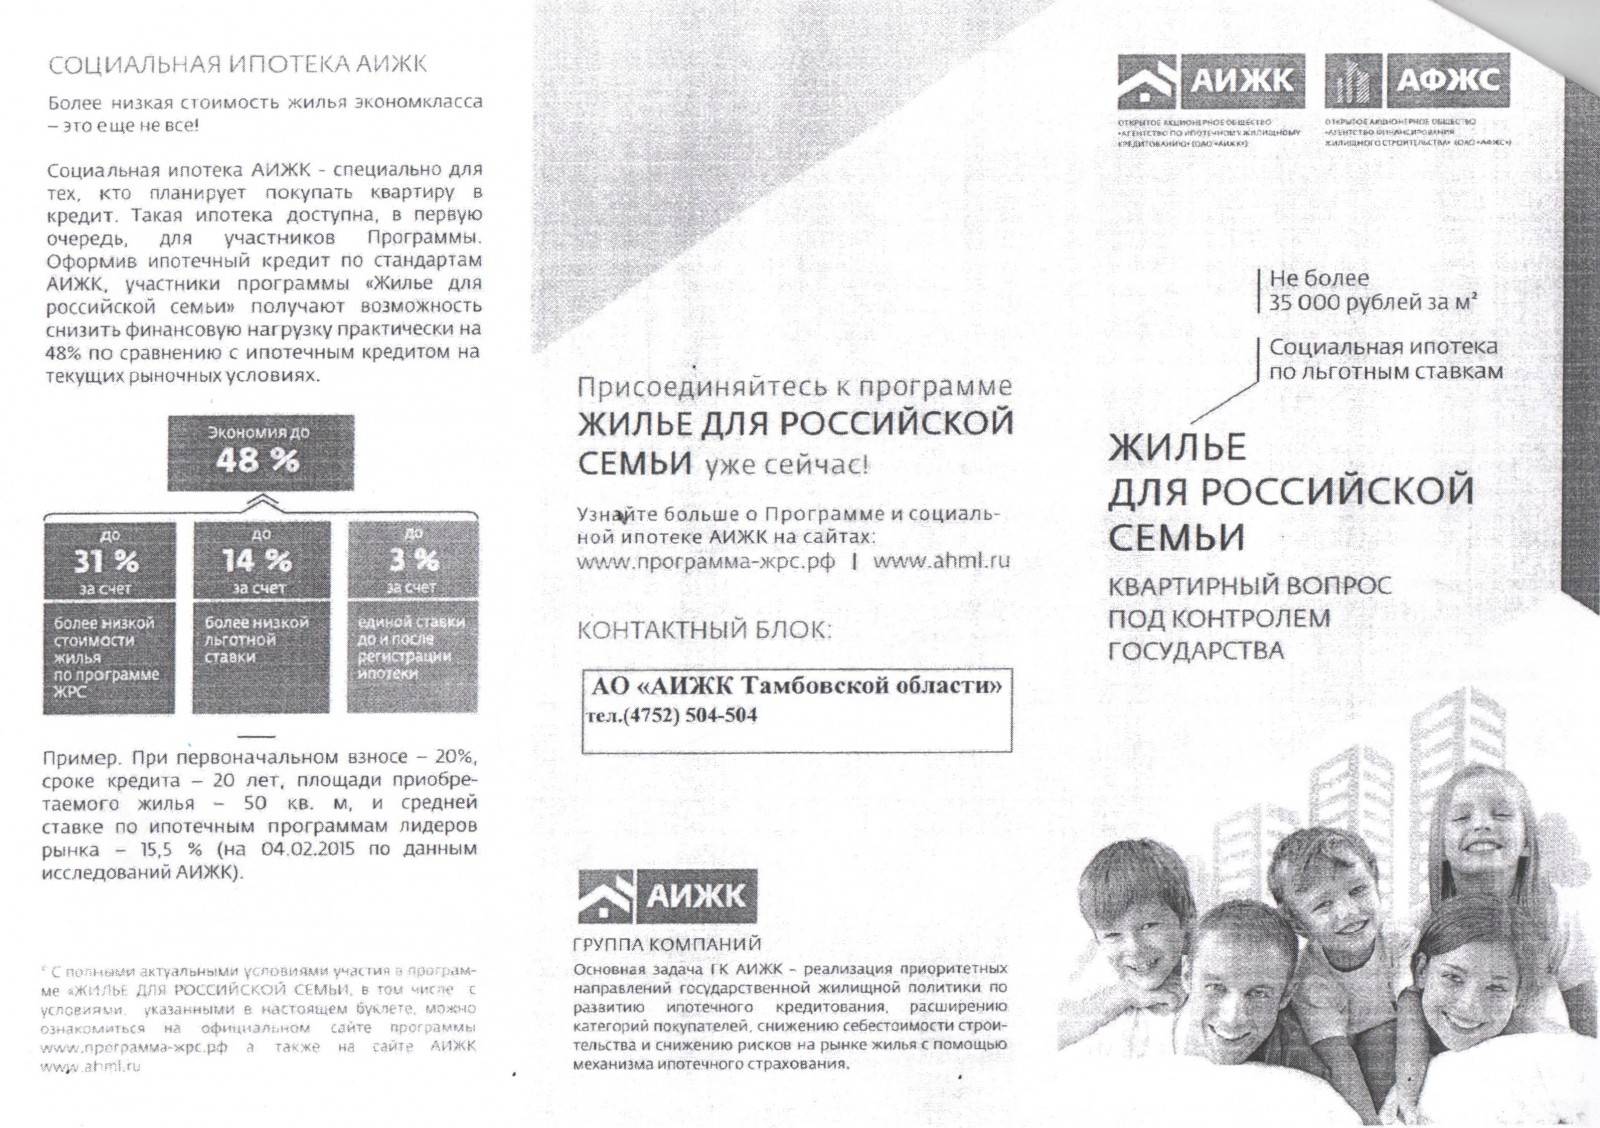 Программа жилье для российской семьи – условия и документы чтобы стать участником государственной программы жилье для российской семьи в москве